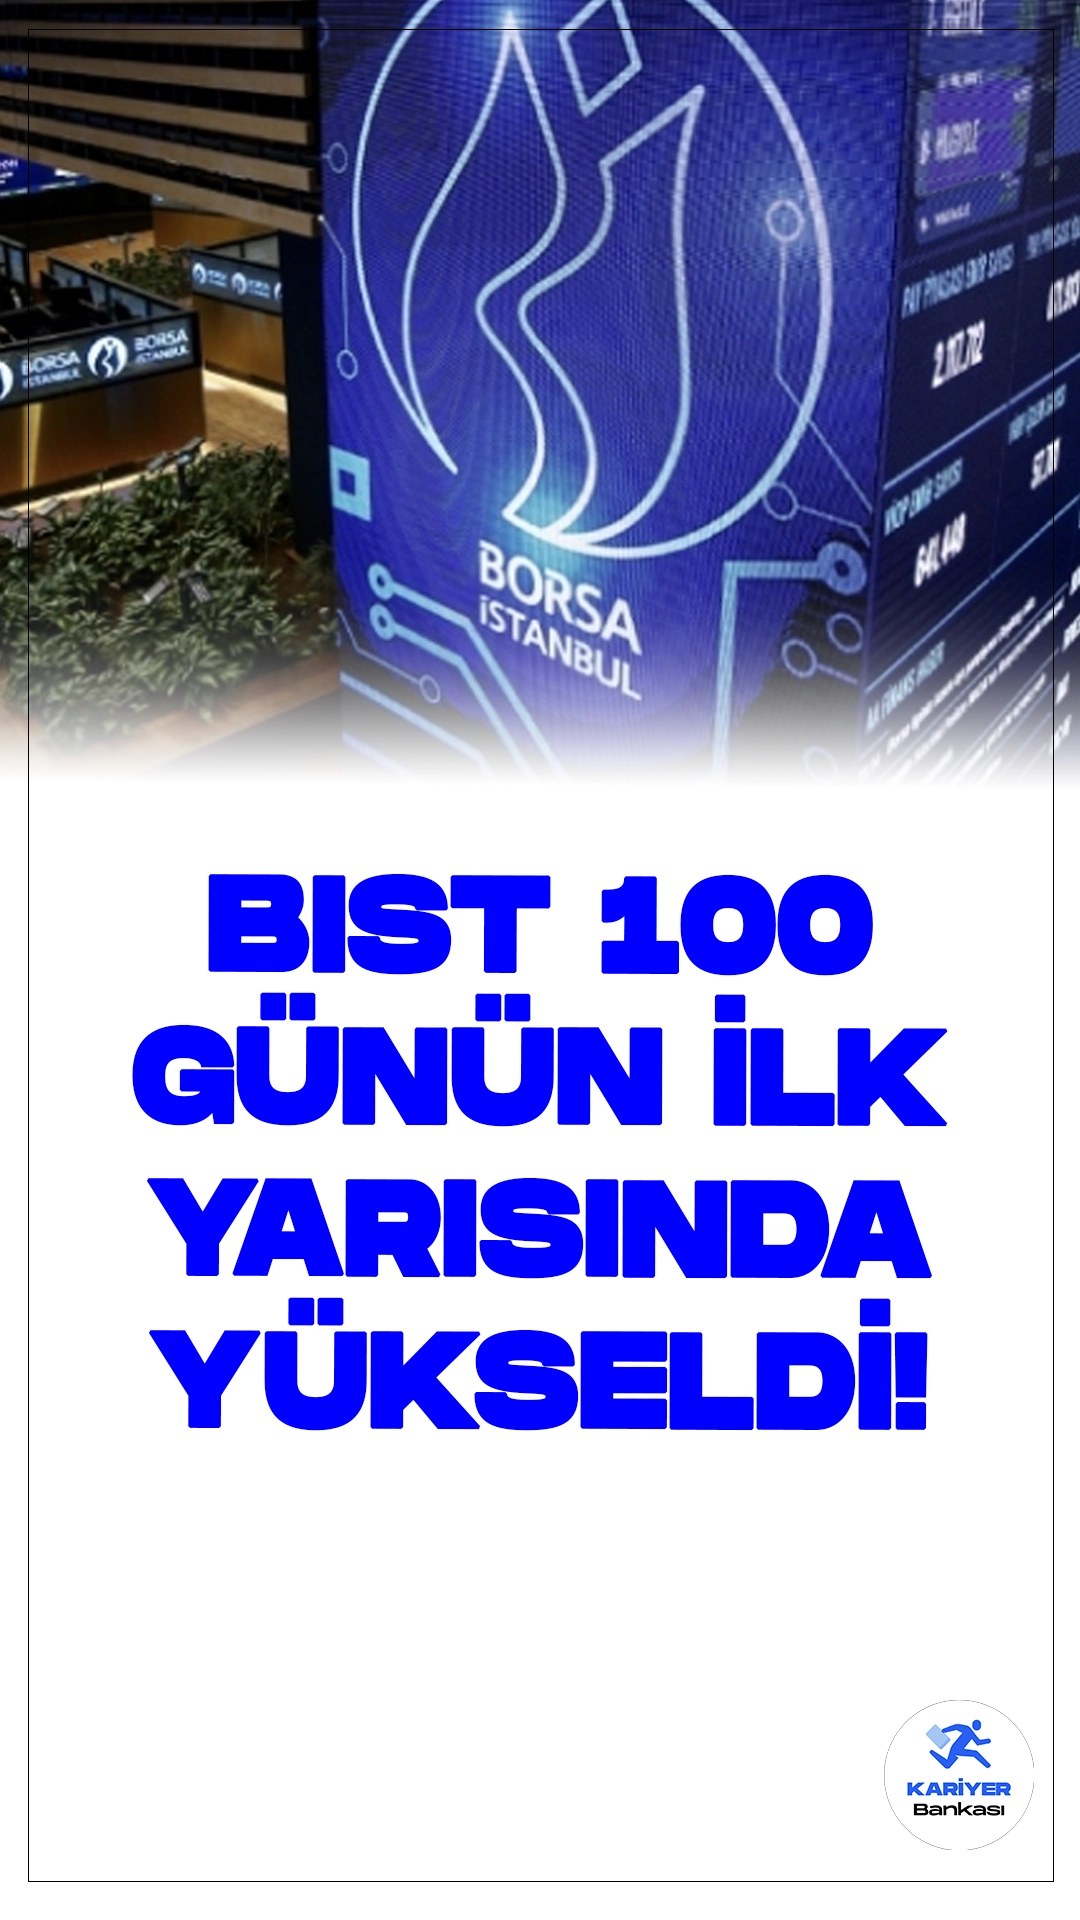 BIST 100 Endeksi Yükselişte: Günlük Değerlendirme.Günün ilk yarısında, Borsa İstanbul BIST 100 endeksi yüzde 0,63 oranında artış gösterdi ve 10.333,17 puana ulaştı. İşlem hacmi ise 50 milyar lira olarak kaydedildi.